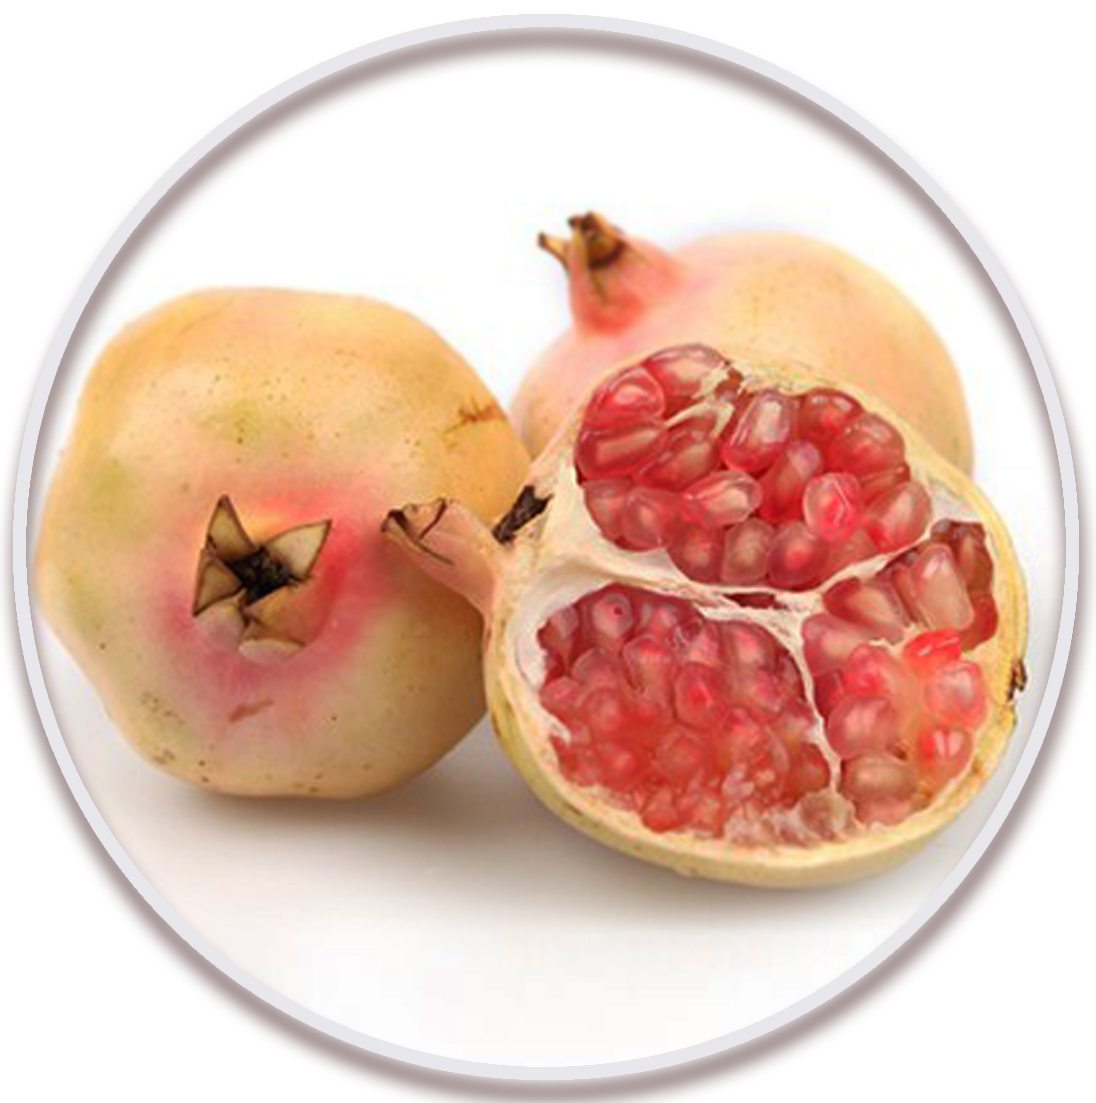 انار شکر بهشهر (Pomegranate)